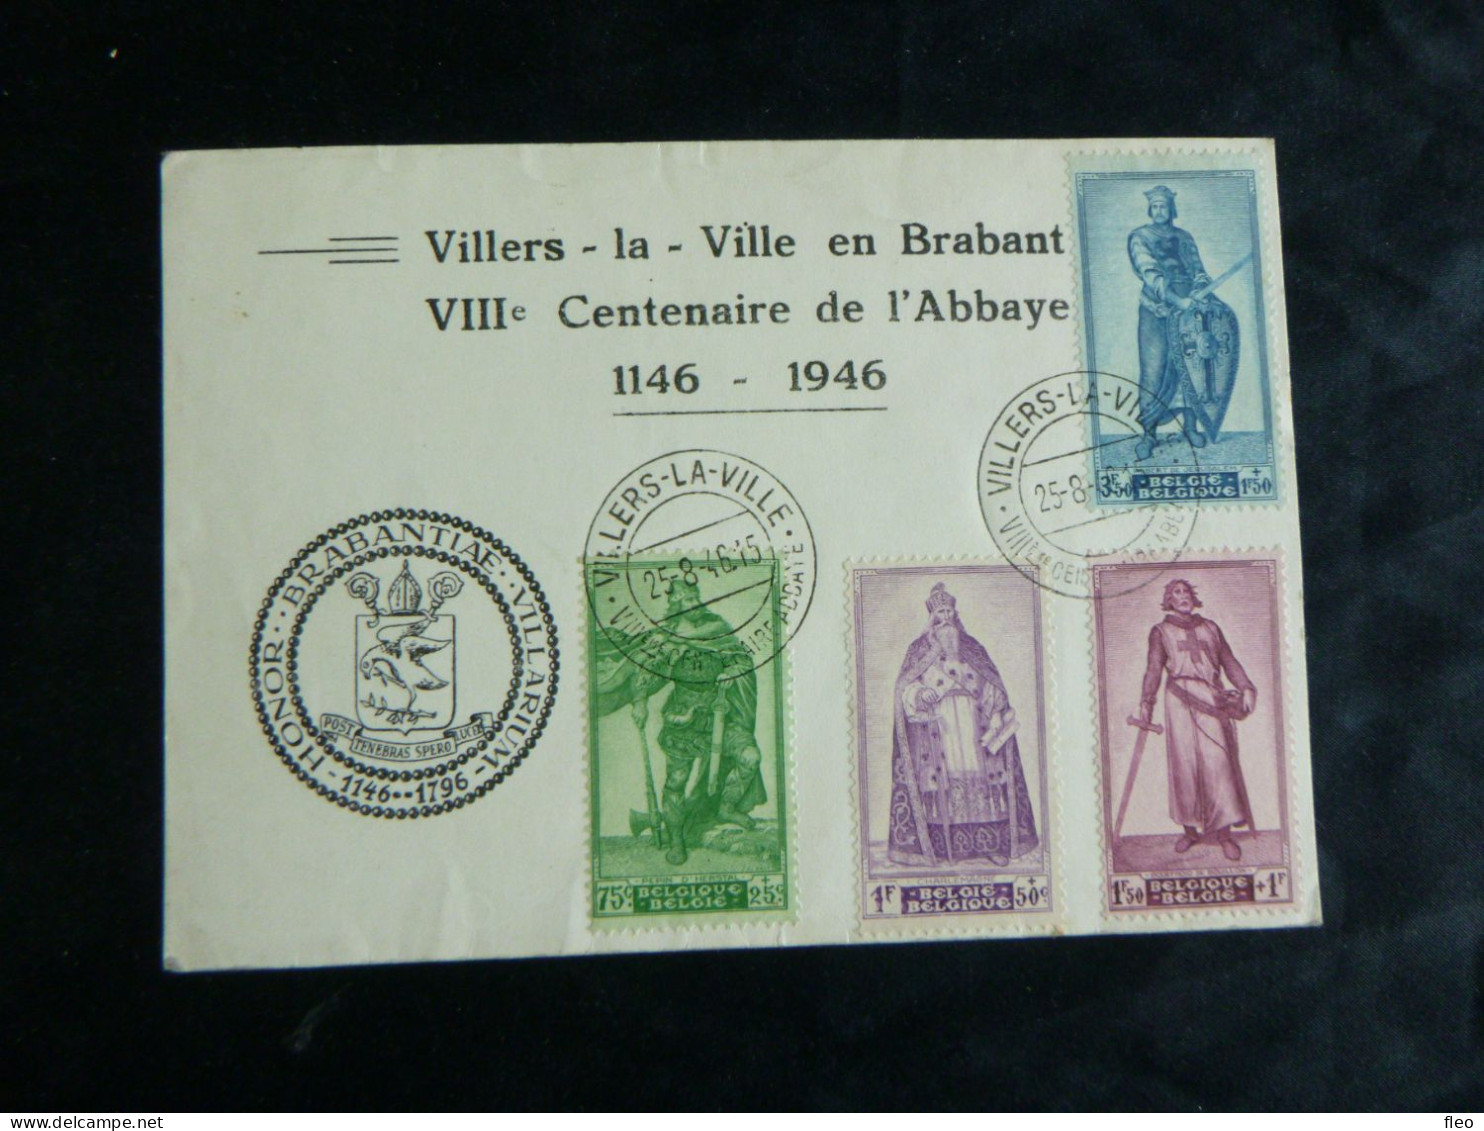 1946 737/740 Carte Souvenir Villers La Ville En Brabant 1146/1946 - Commemorative Documents